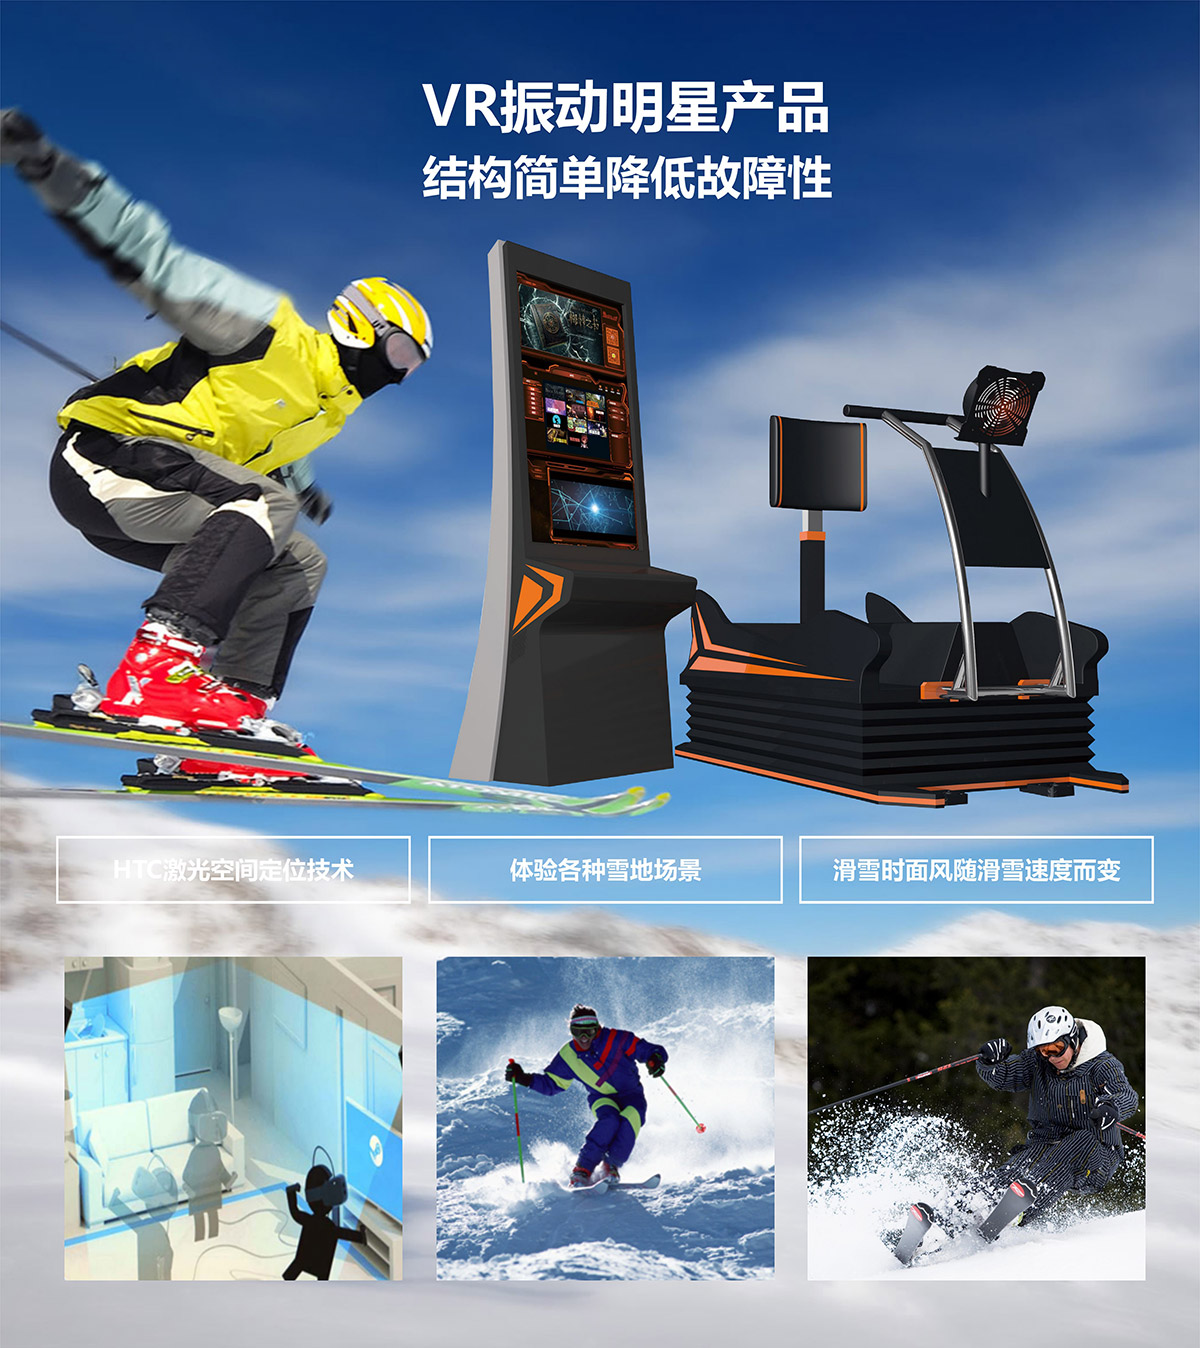 互动电影VR明星产品模拟滑雪.jpg